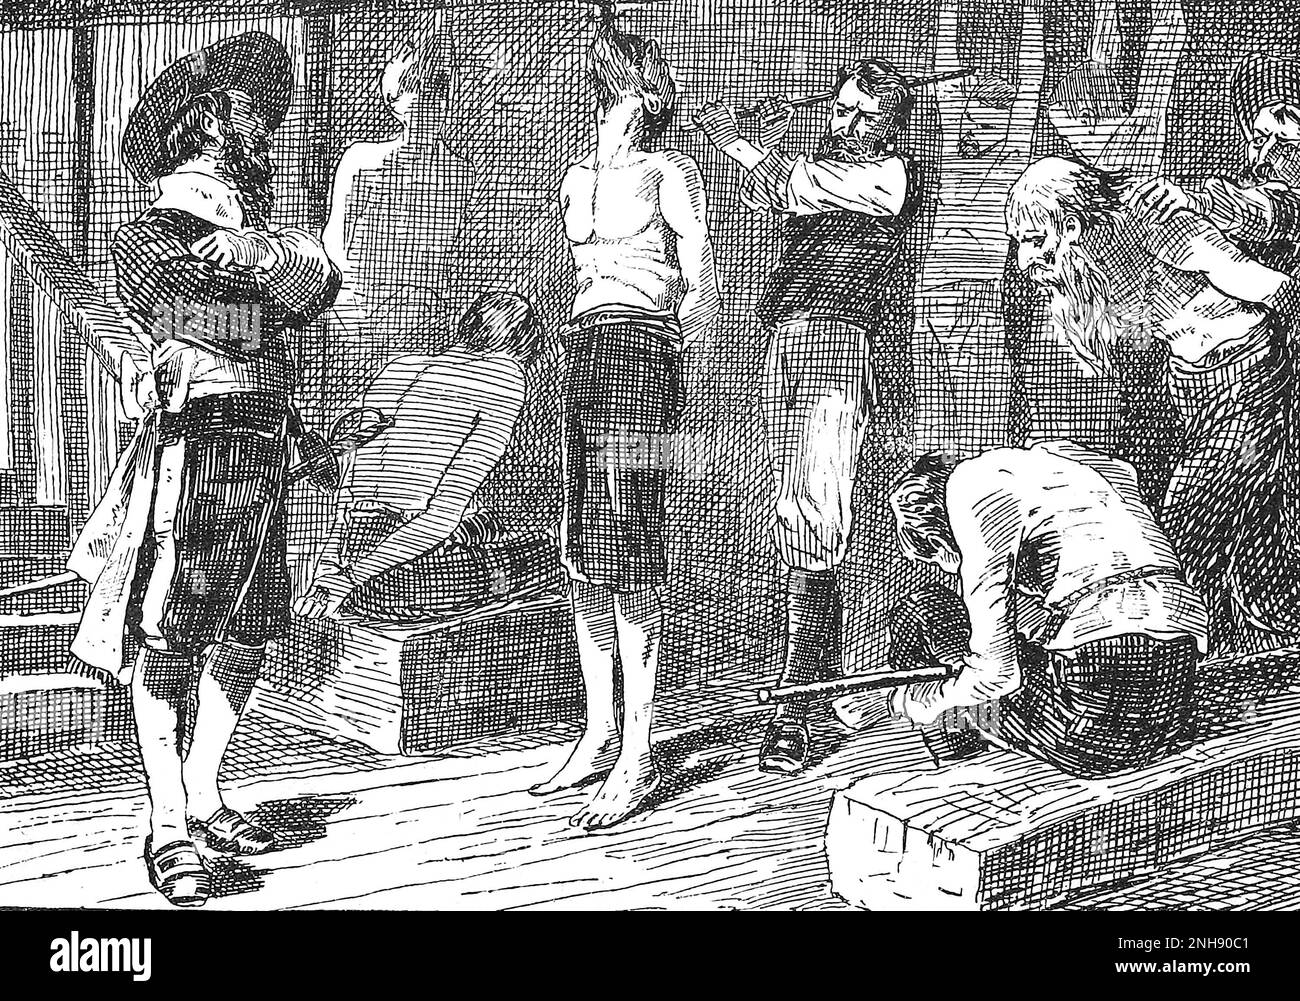 Pirat Henry Morgan foltert Gefangene. Sir Henry Morgan (1635-1688) war ein walisischer Freibeuter, Plantagenbesitzer und später Vizegouverneur von Jamaika. Illustration von John Abbott, 1874. Stockfoto